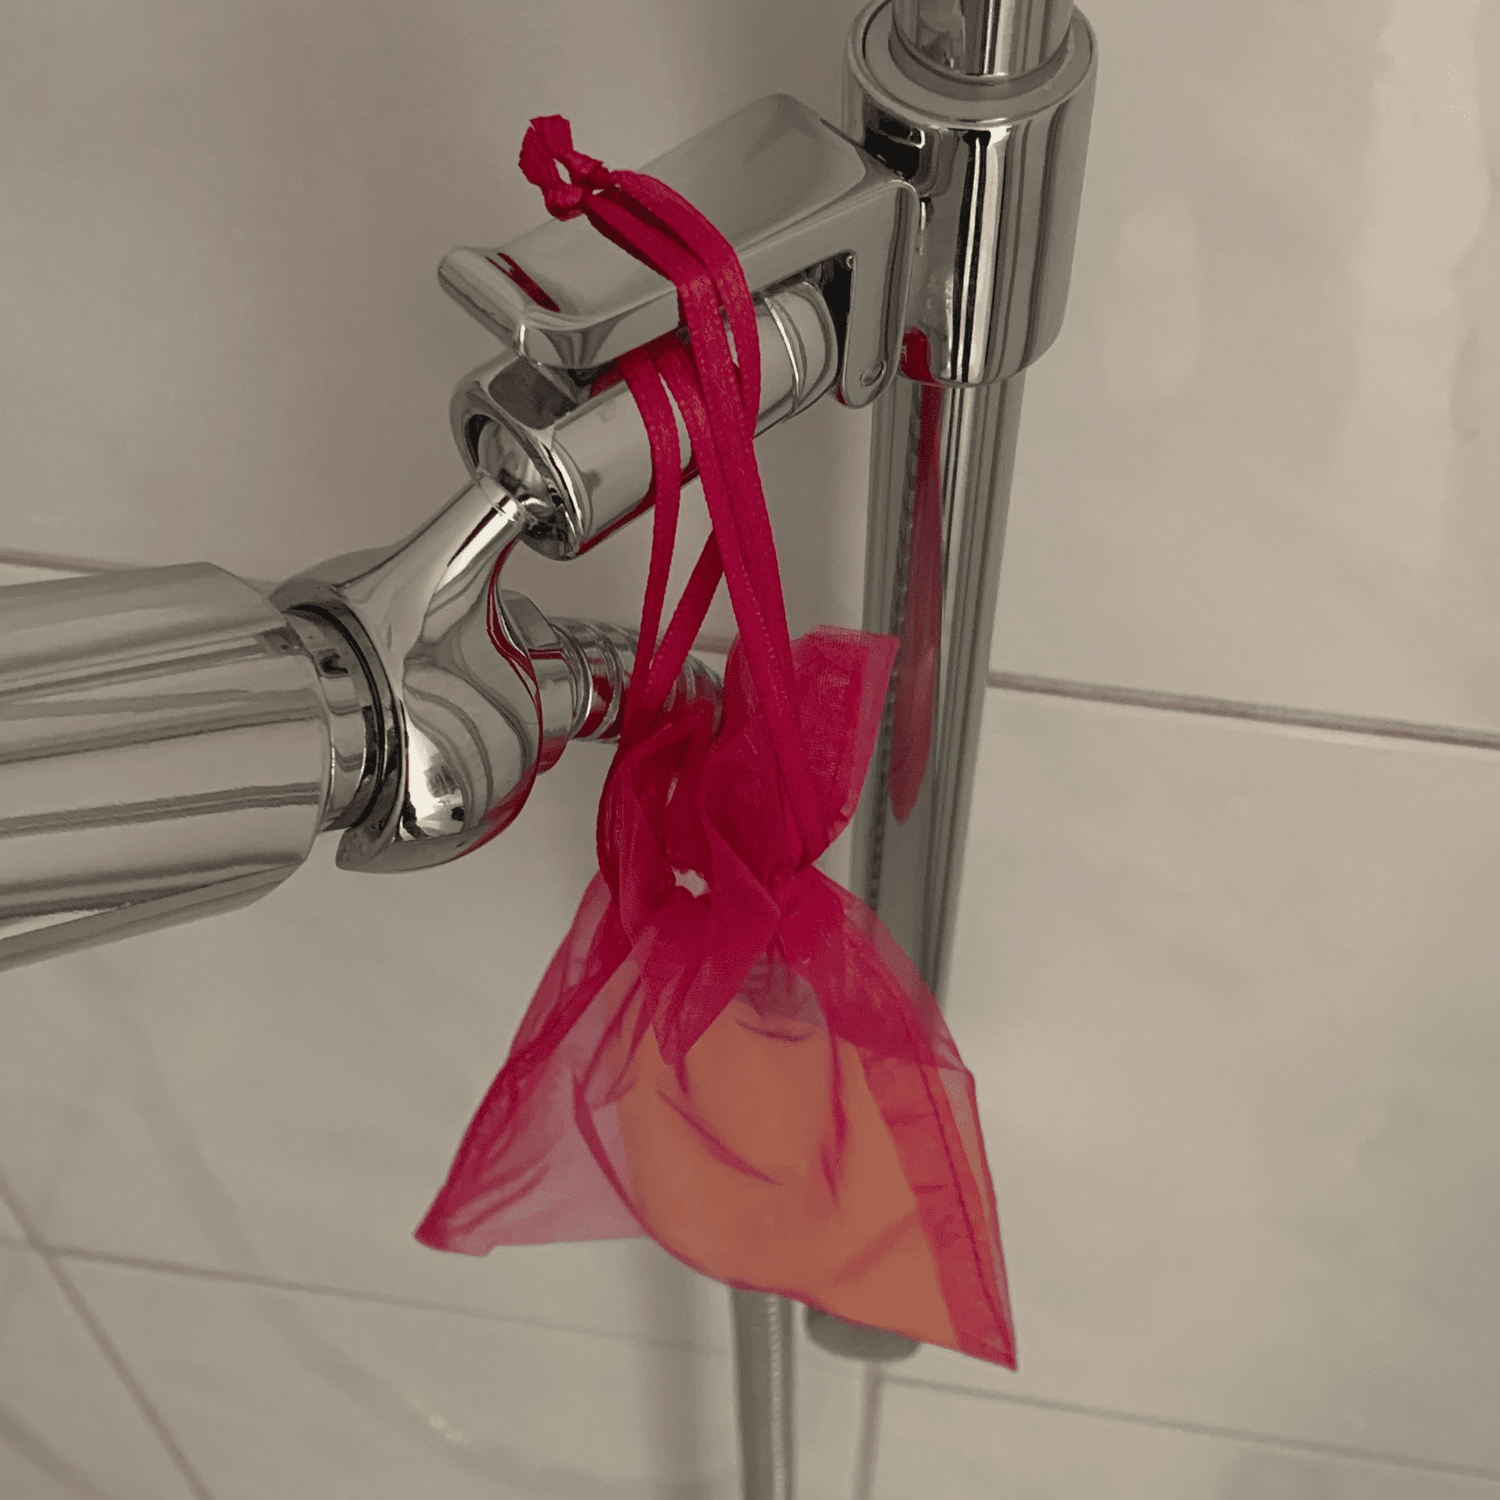 Feste Seife in einem Organza Säcklein zum Aufhängen in der Dusche